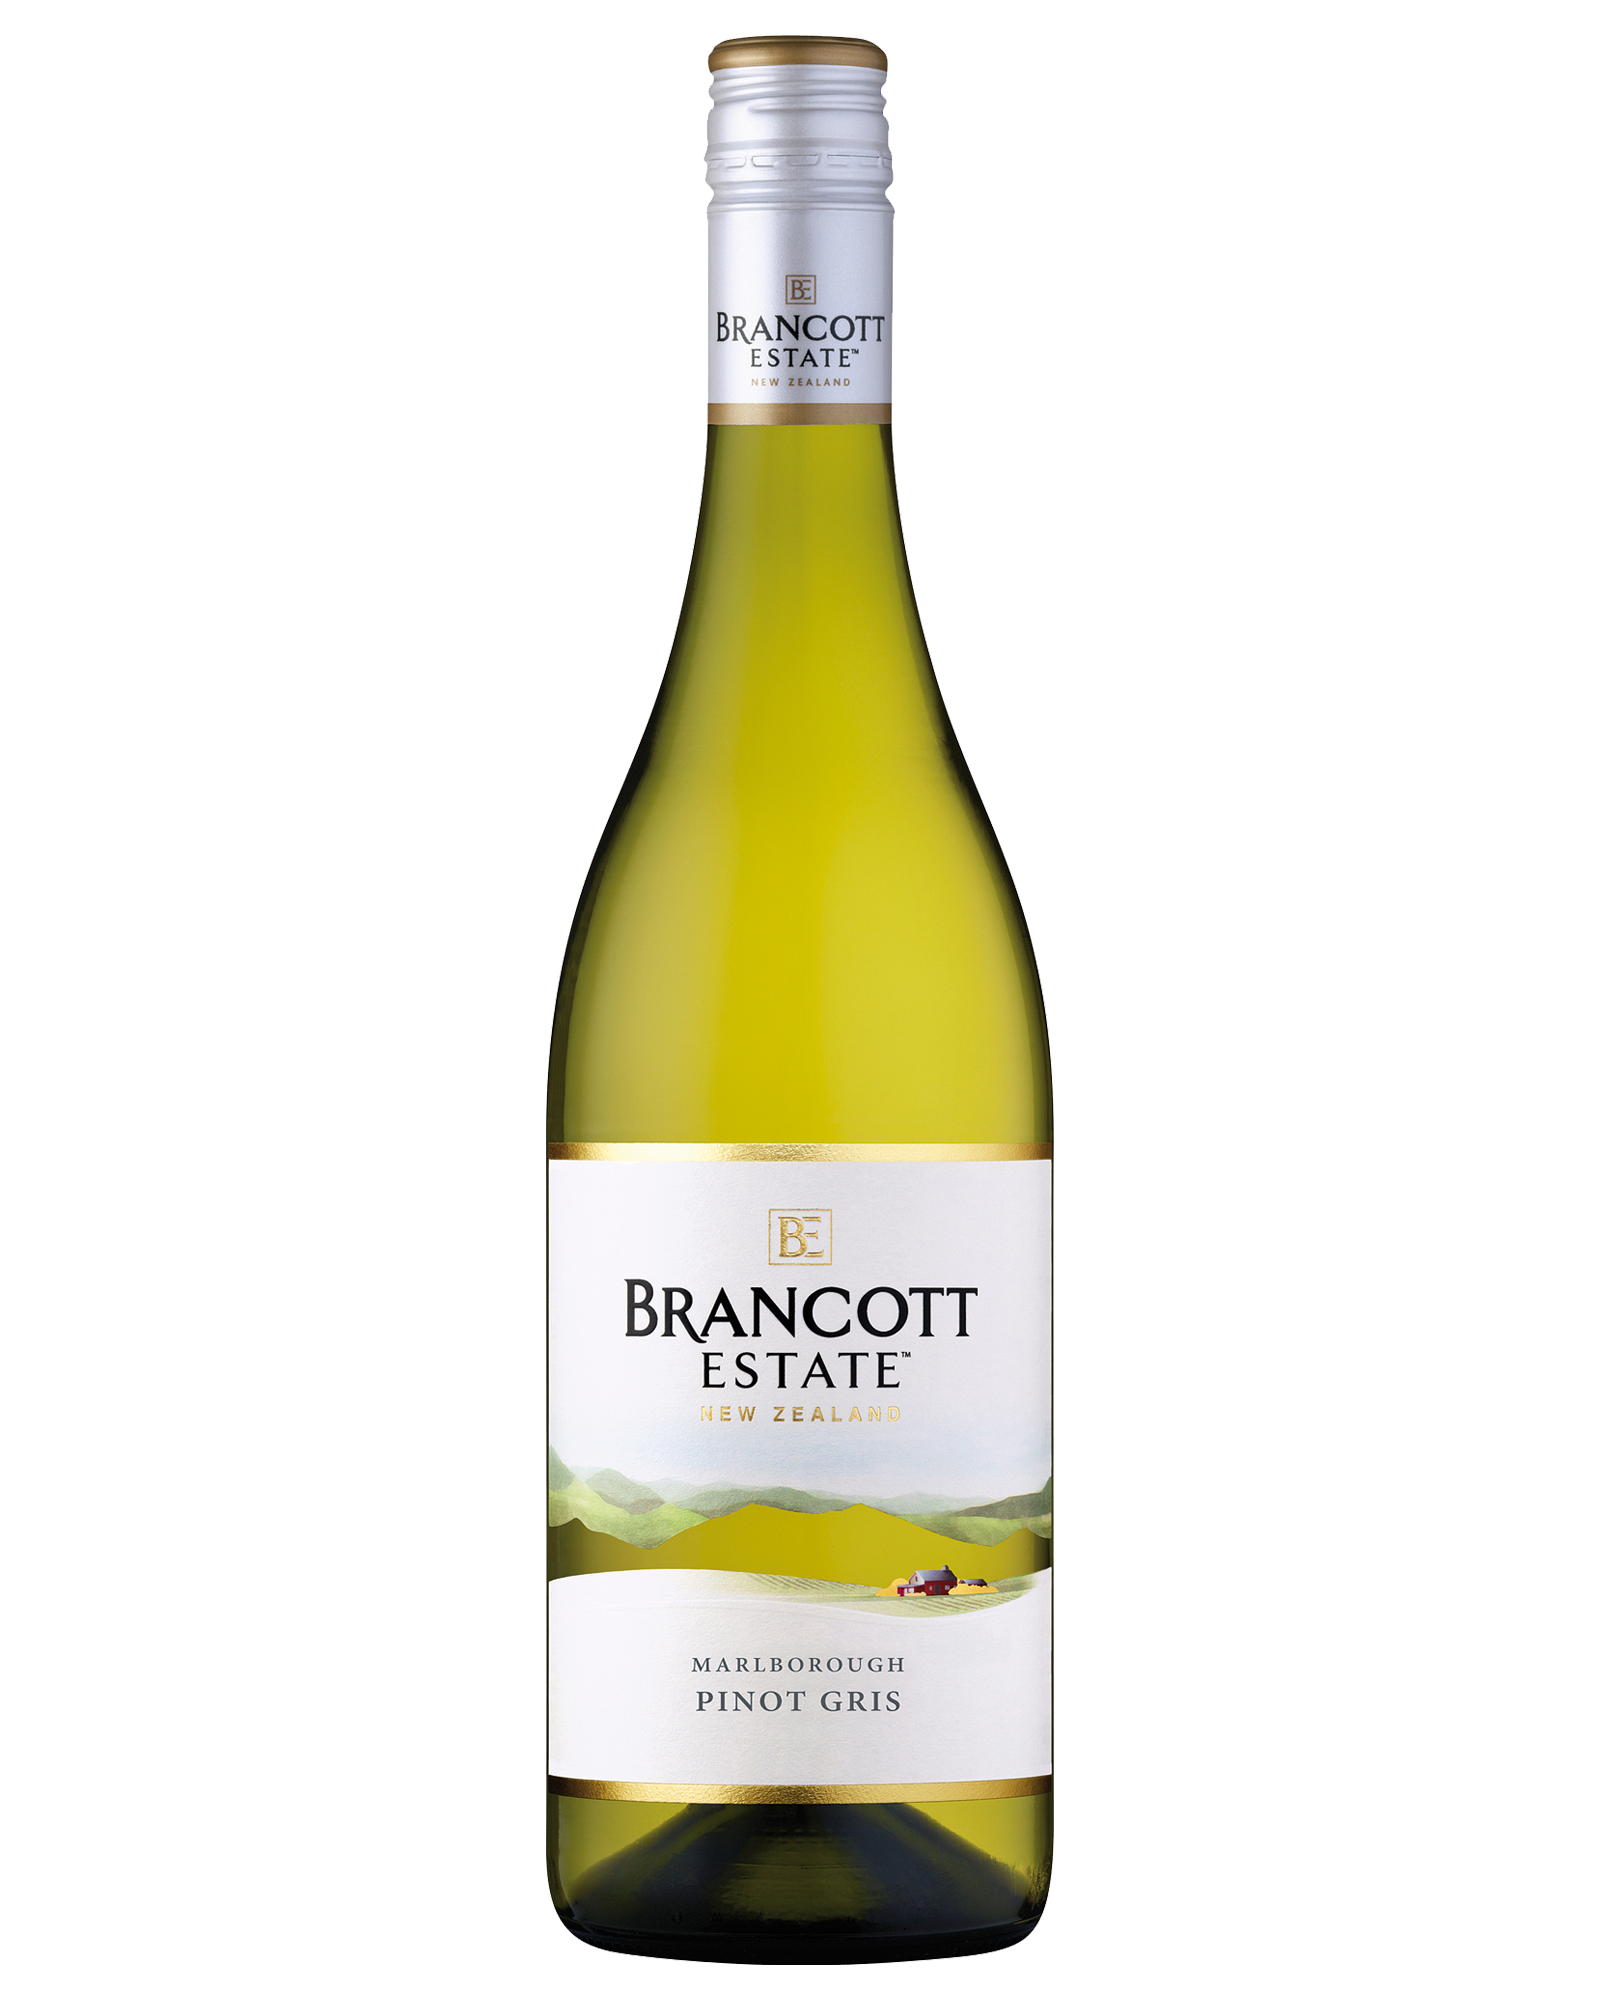 Brancott Estate Pinot Gris